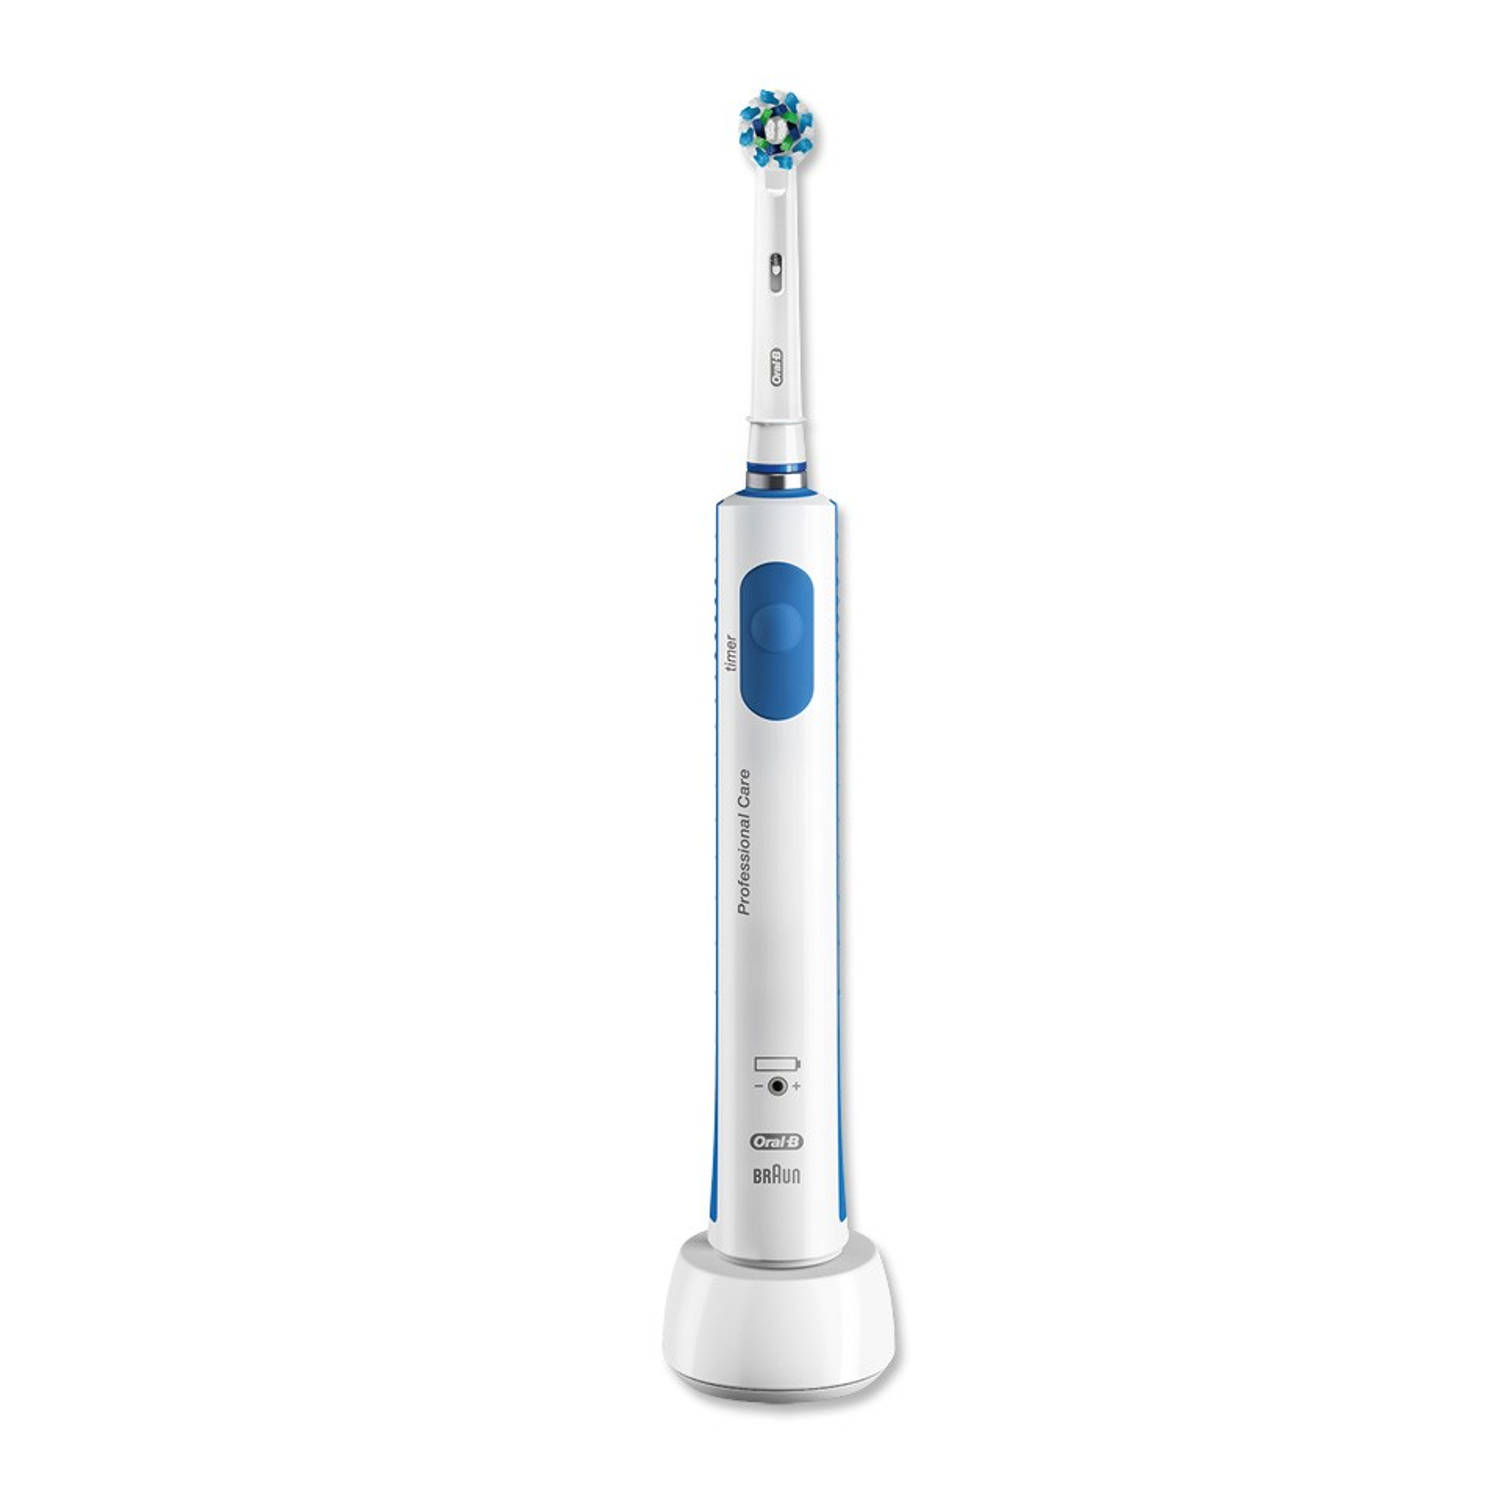 Oral-B elektrische tandenborstel Pro 600 CrossAction